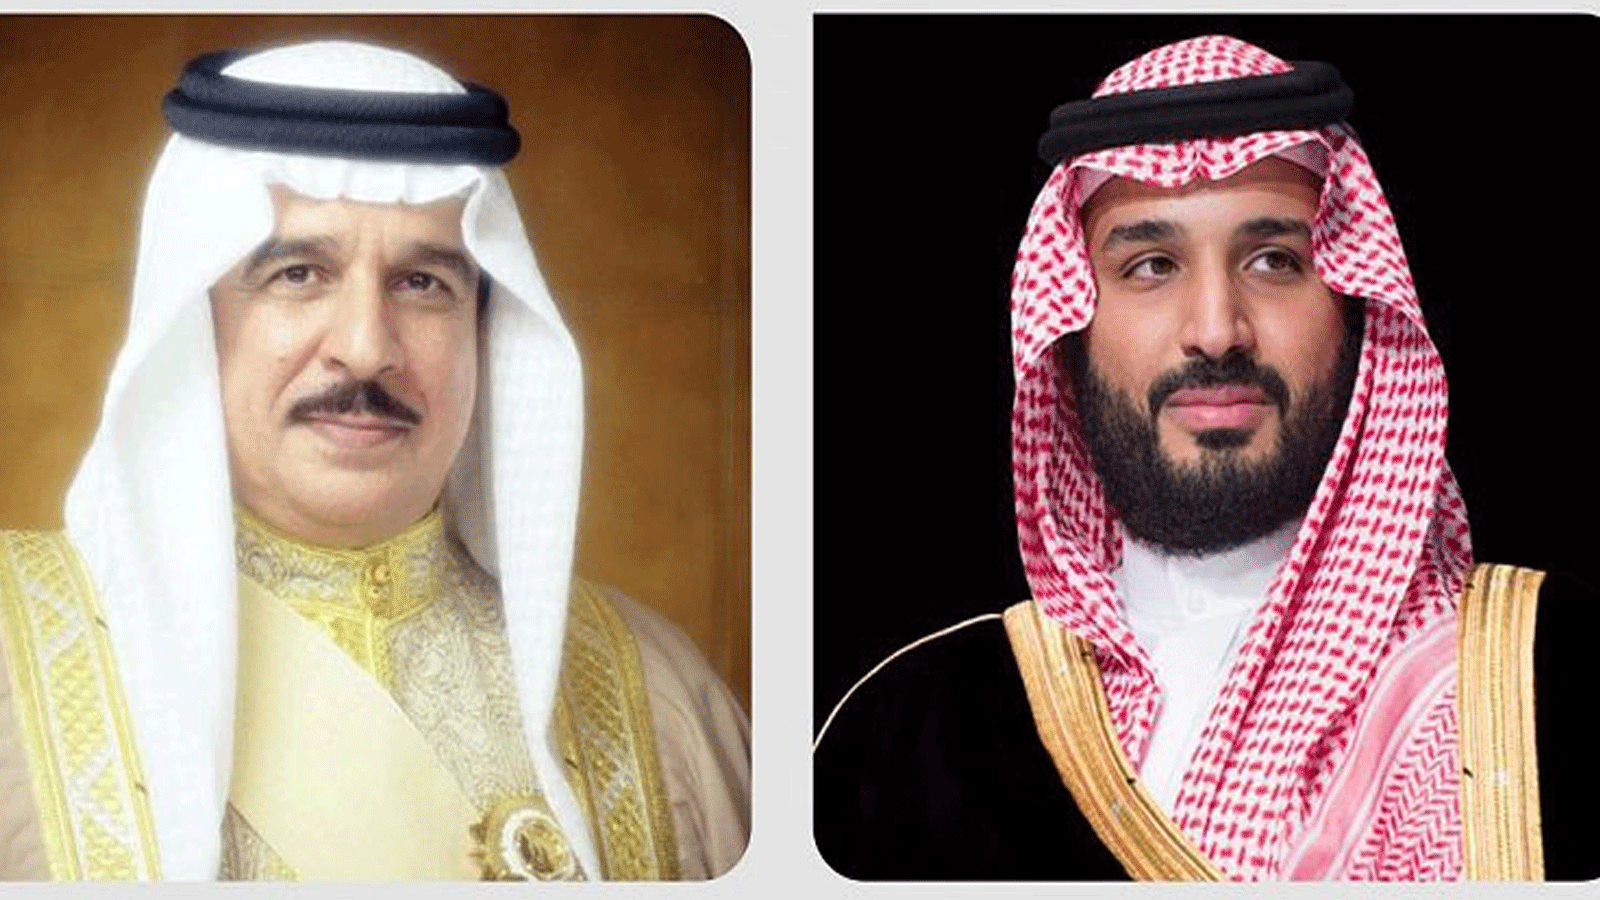 ملك البحرين حمد بن عيسى آل خليفة يُهنئ ولي العهد السعودي بتسلّمه رئاسة مجلس الوزراء(واس)